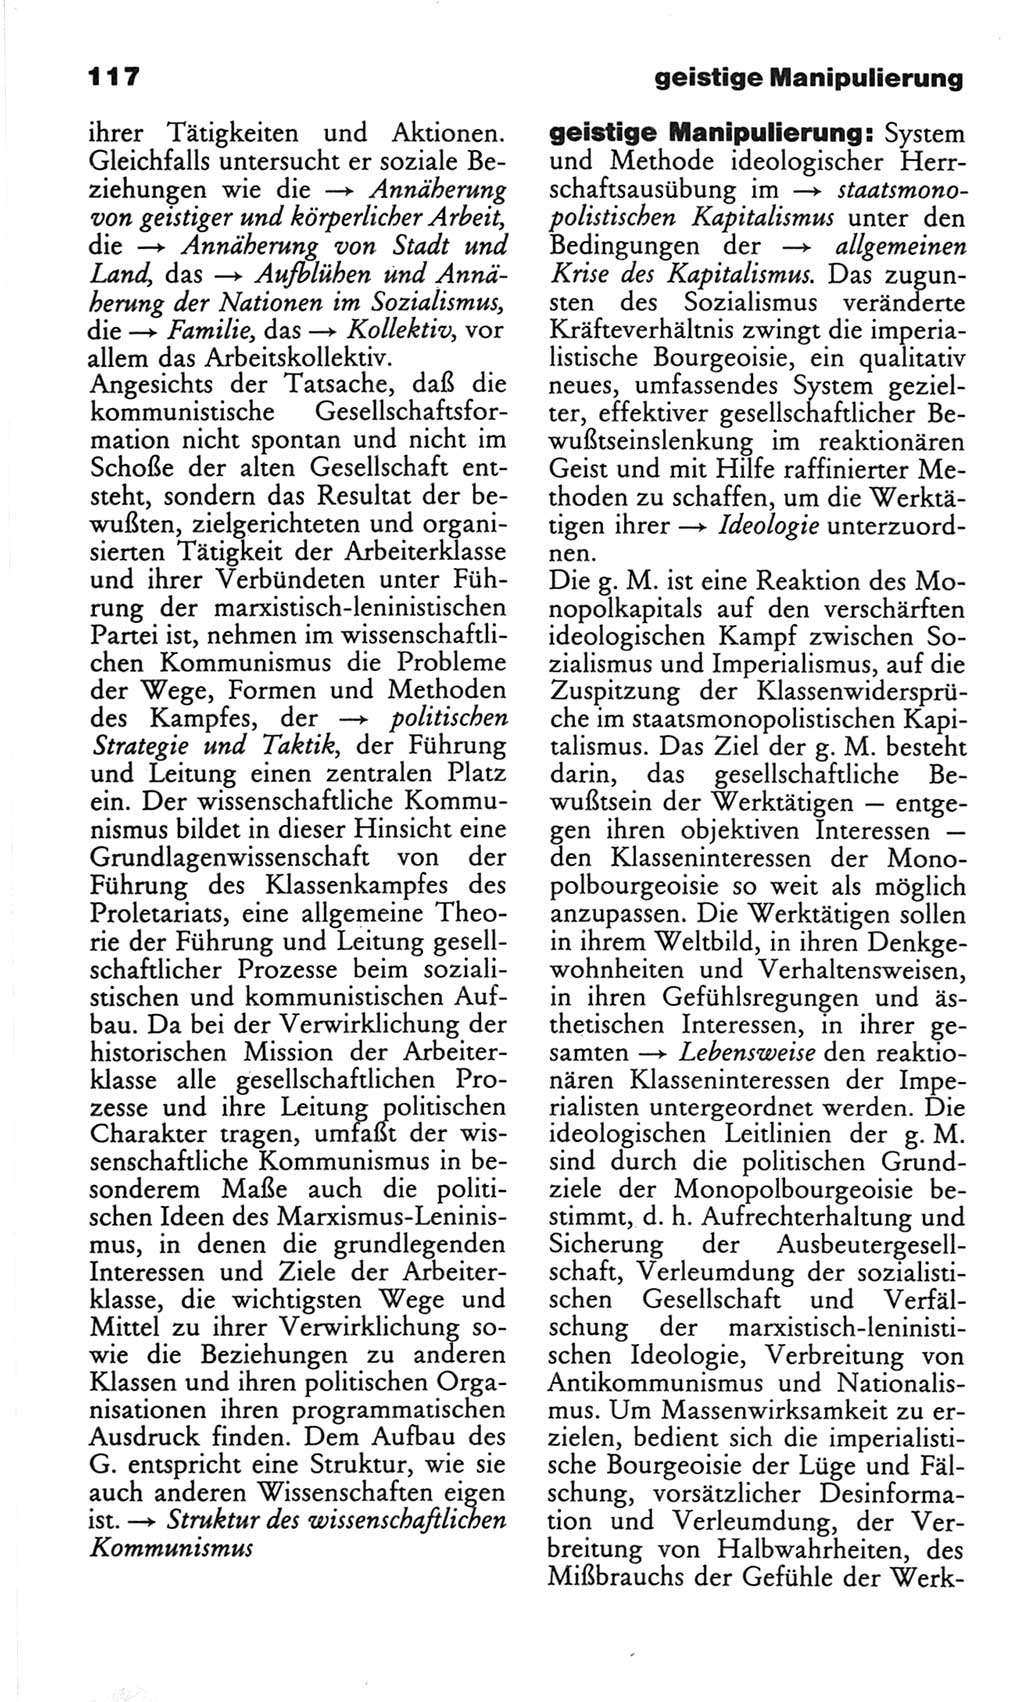 Wörterbuch des wissenschaftlichen Kommunismus [Deutsche Demokratische Republik (DDR)] 1982, Seite 117 (Wb. wiss. Komm. DDR 1982, S. 117)